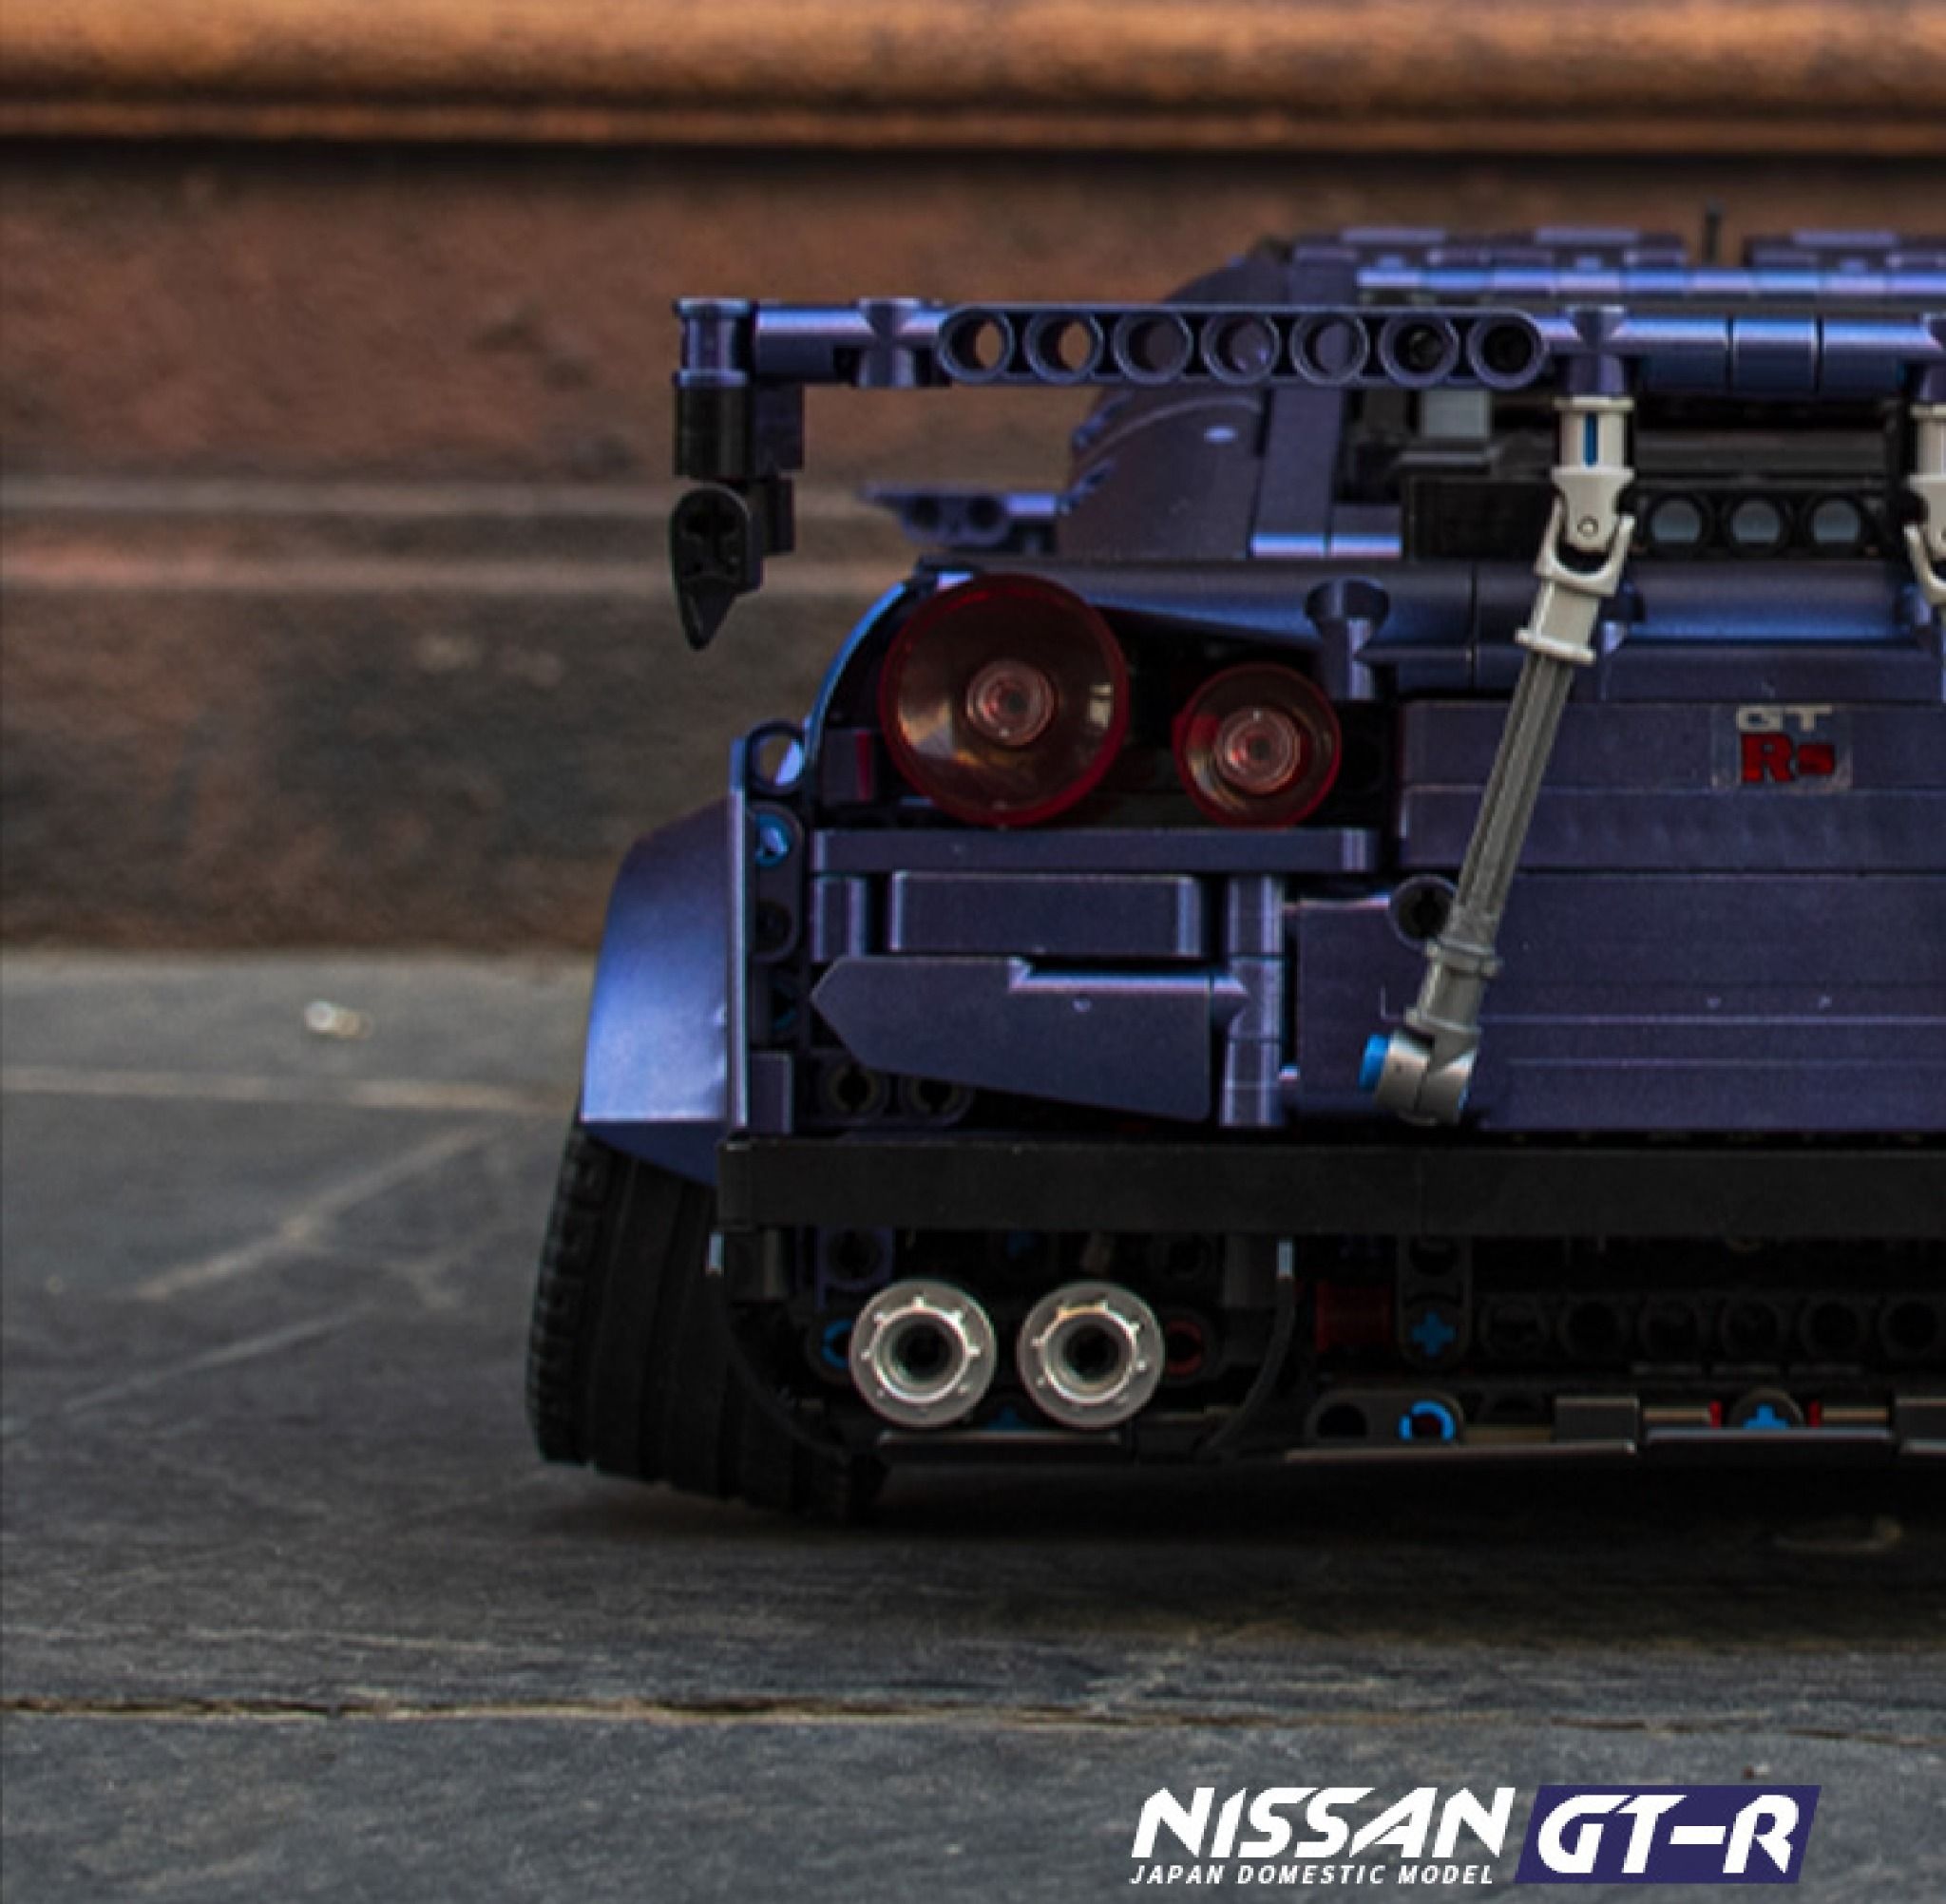  Mô hình xe ô tô lắp ghép Nissan GTR R35 JDM body kit 2382 pcs tỉ lệ 1:10 LG022 